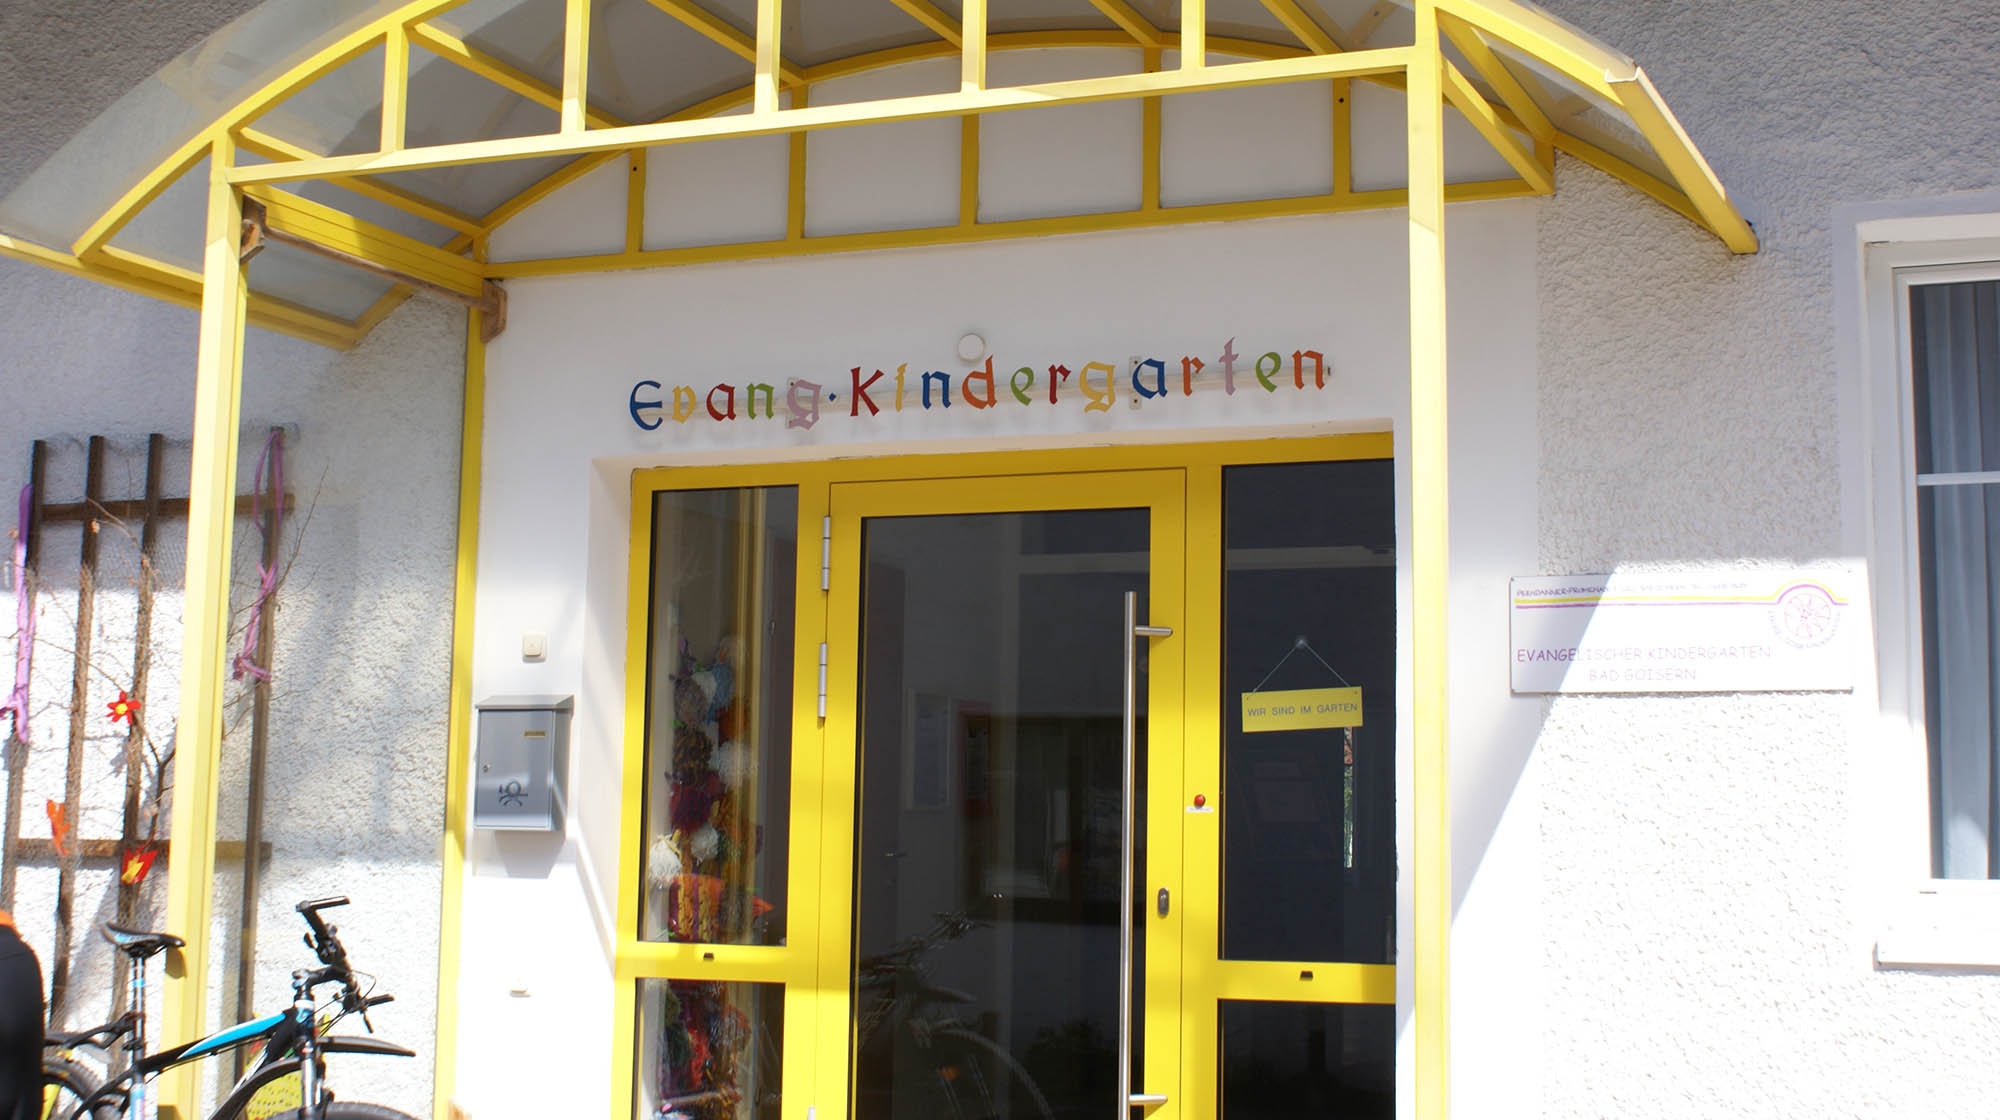 Evangelischer Kindergarten